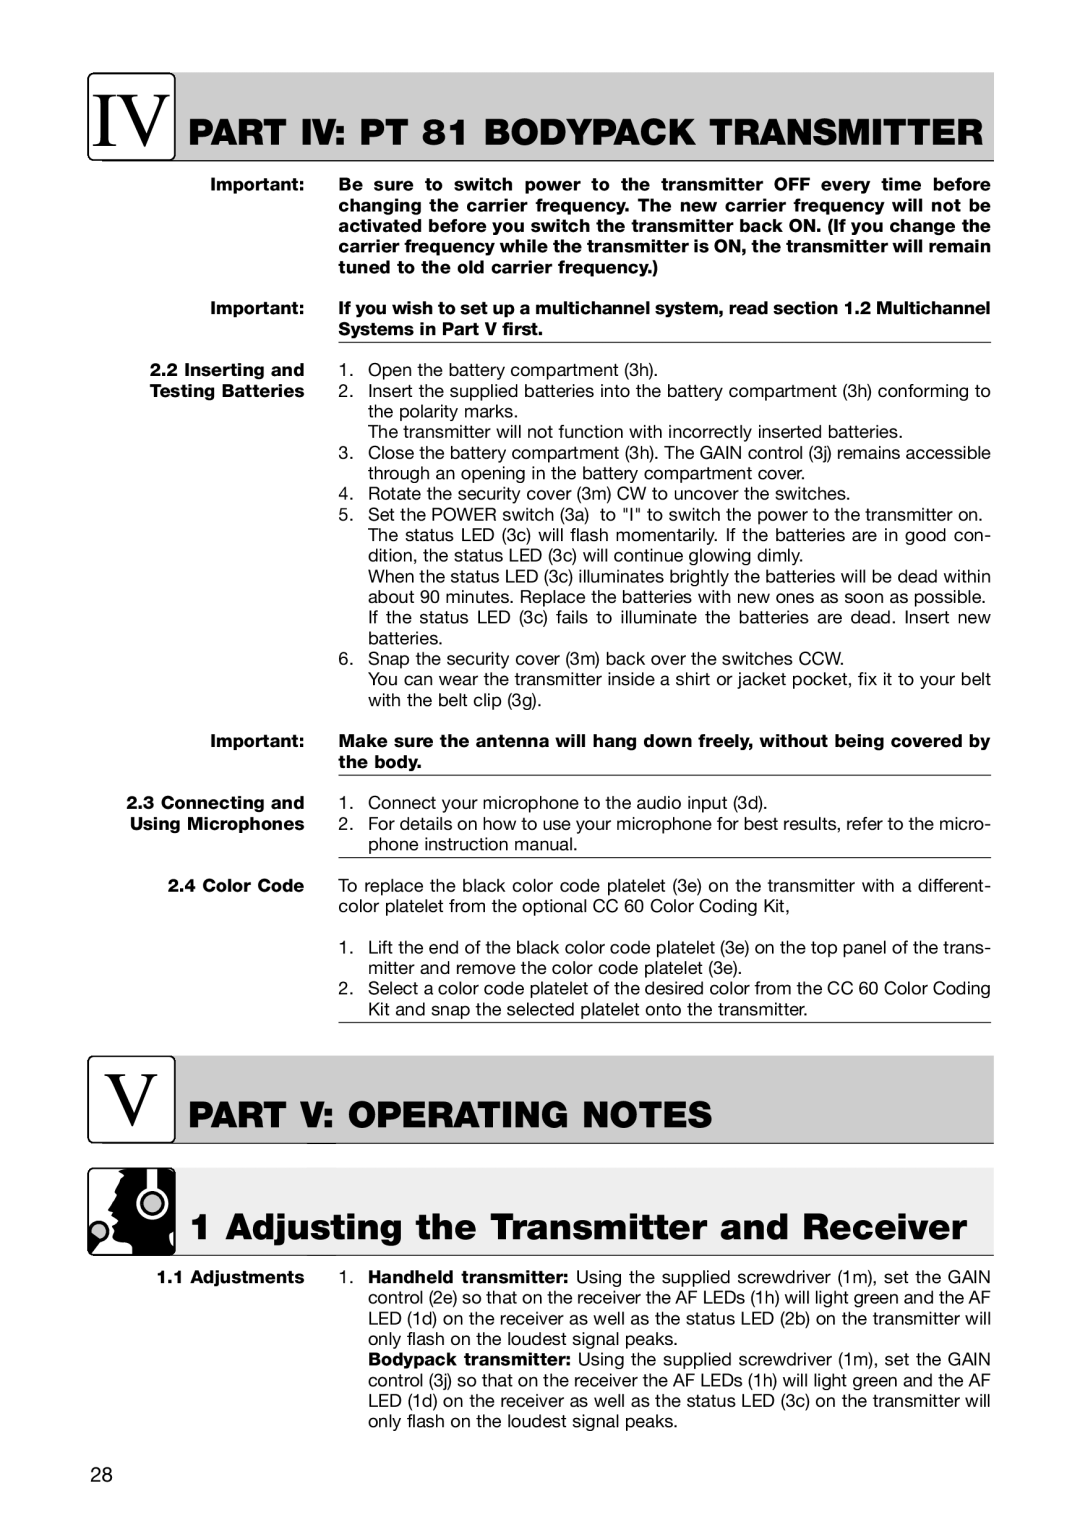 AKG Acoustics IV PART IV PT 81 BODYPACK TRANSMITTER, V Part V Operating Notes, Adjusting the Transmitter and Receiver 